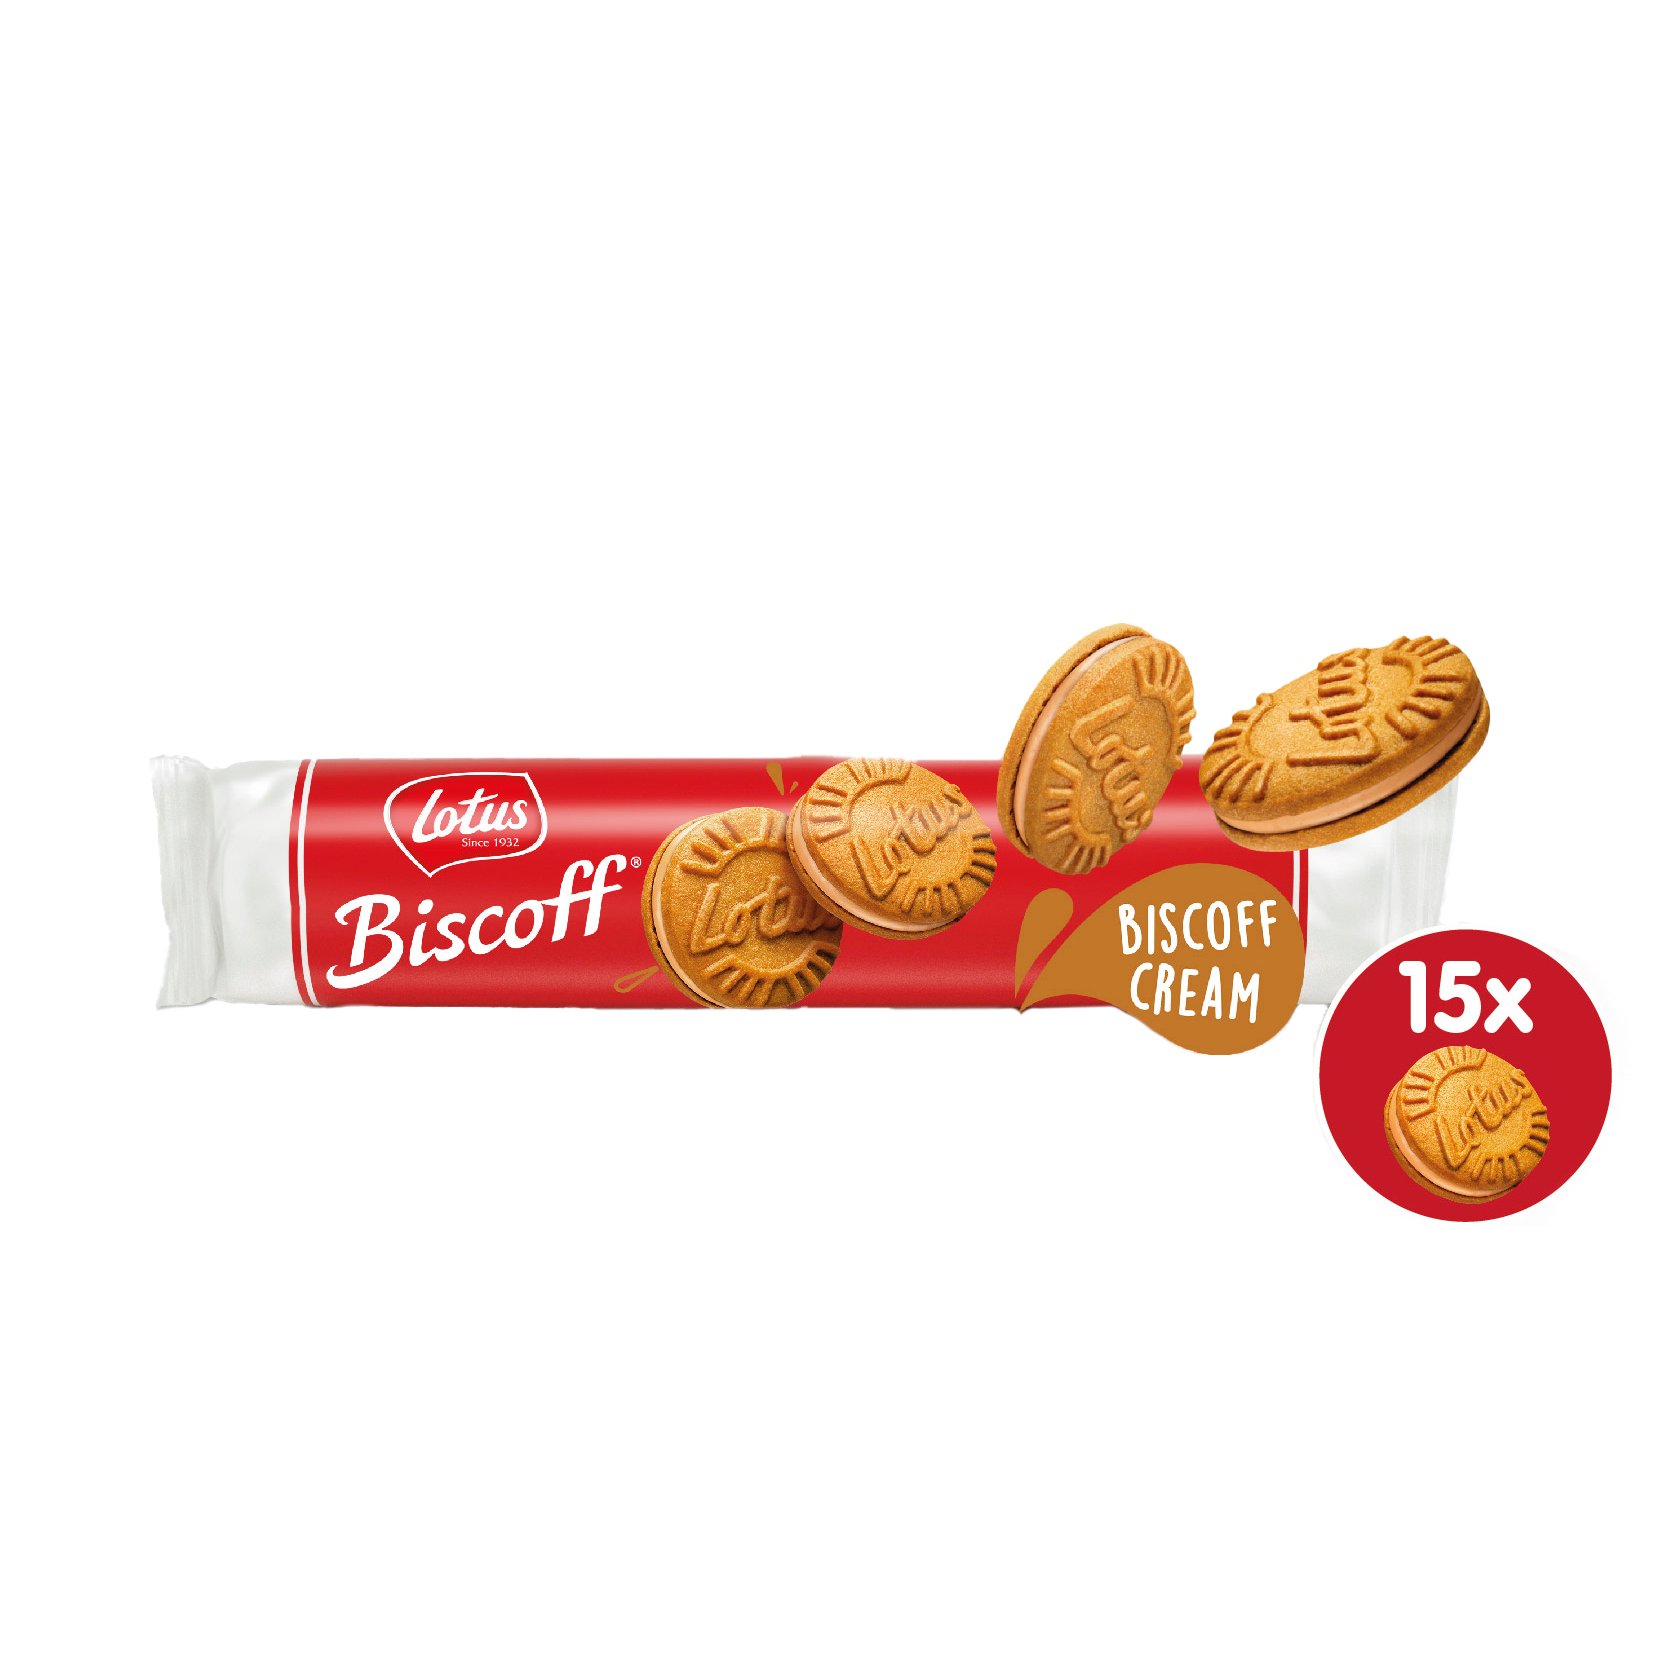 Lotus Biscoff® Belgian Chocolate Cookies, 5.4 oz - Foods Co.